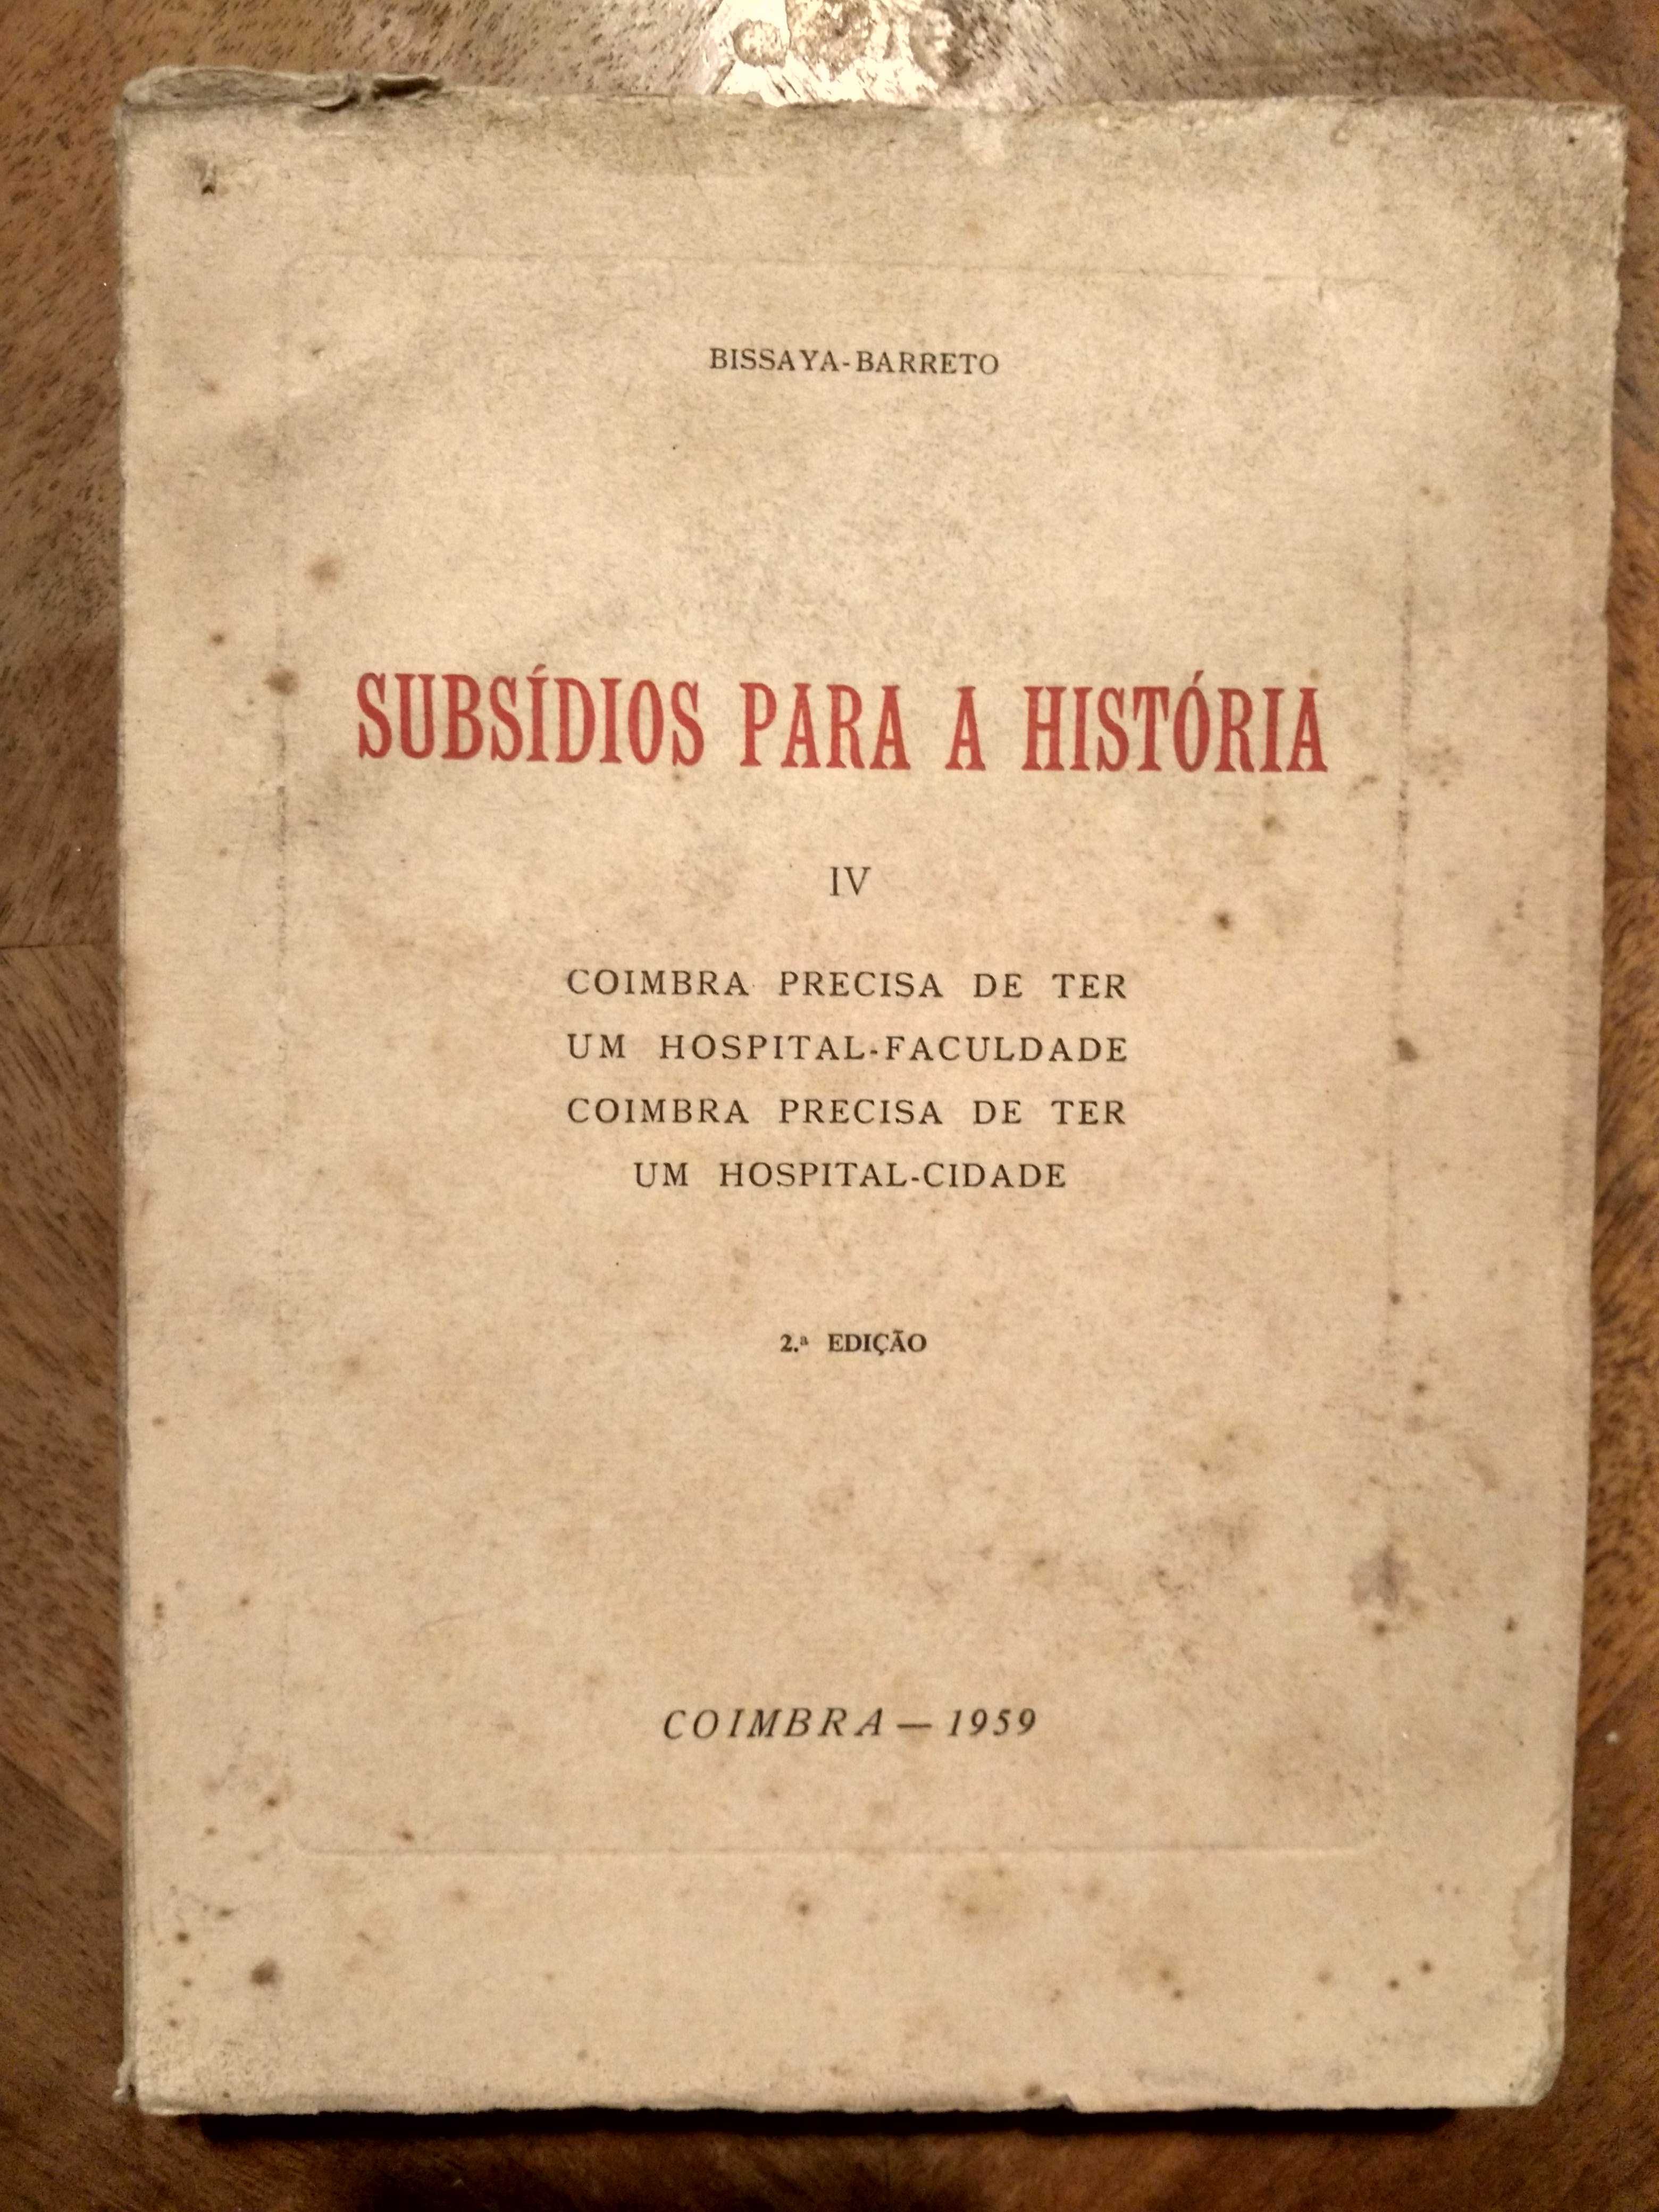 Subsídios para sua História - Coimbra - Bissaya Barreto - 1961